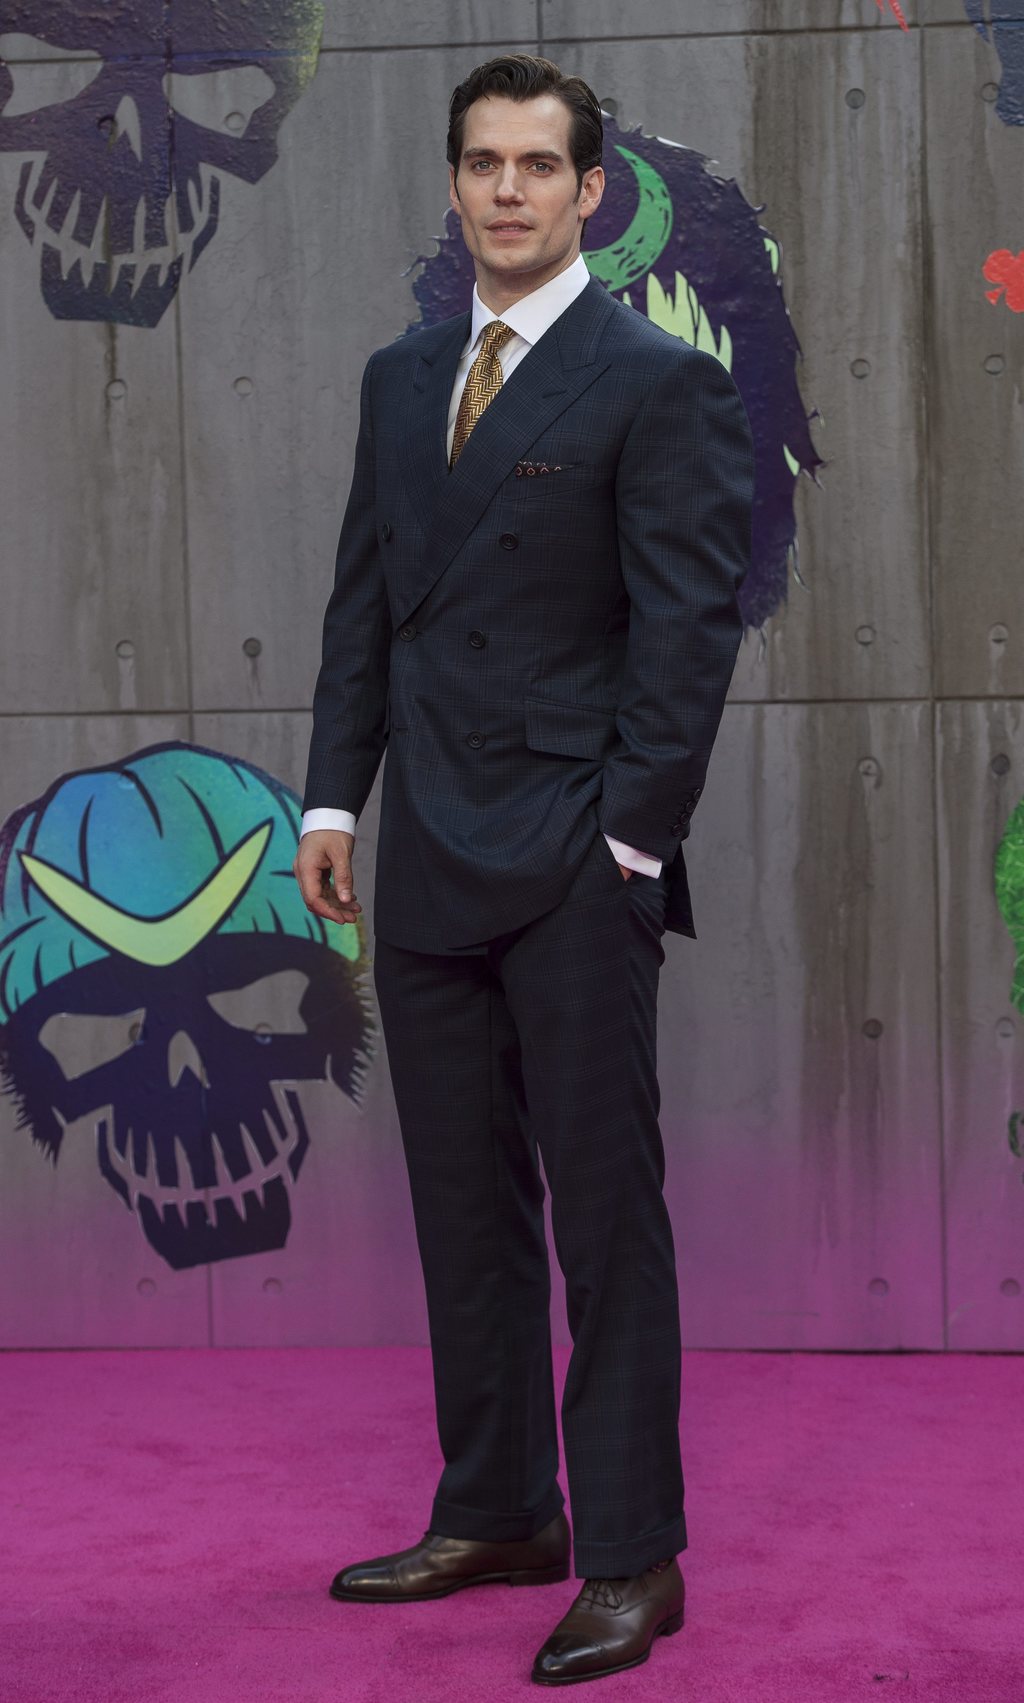 Anécdota. El actor británico, Henry Cavill, fue rechazado para el papel del Agente 007 por sus entonces kilos de más.